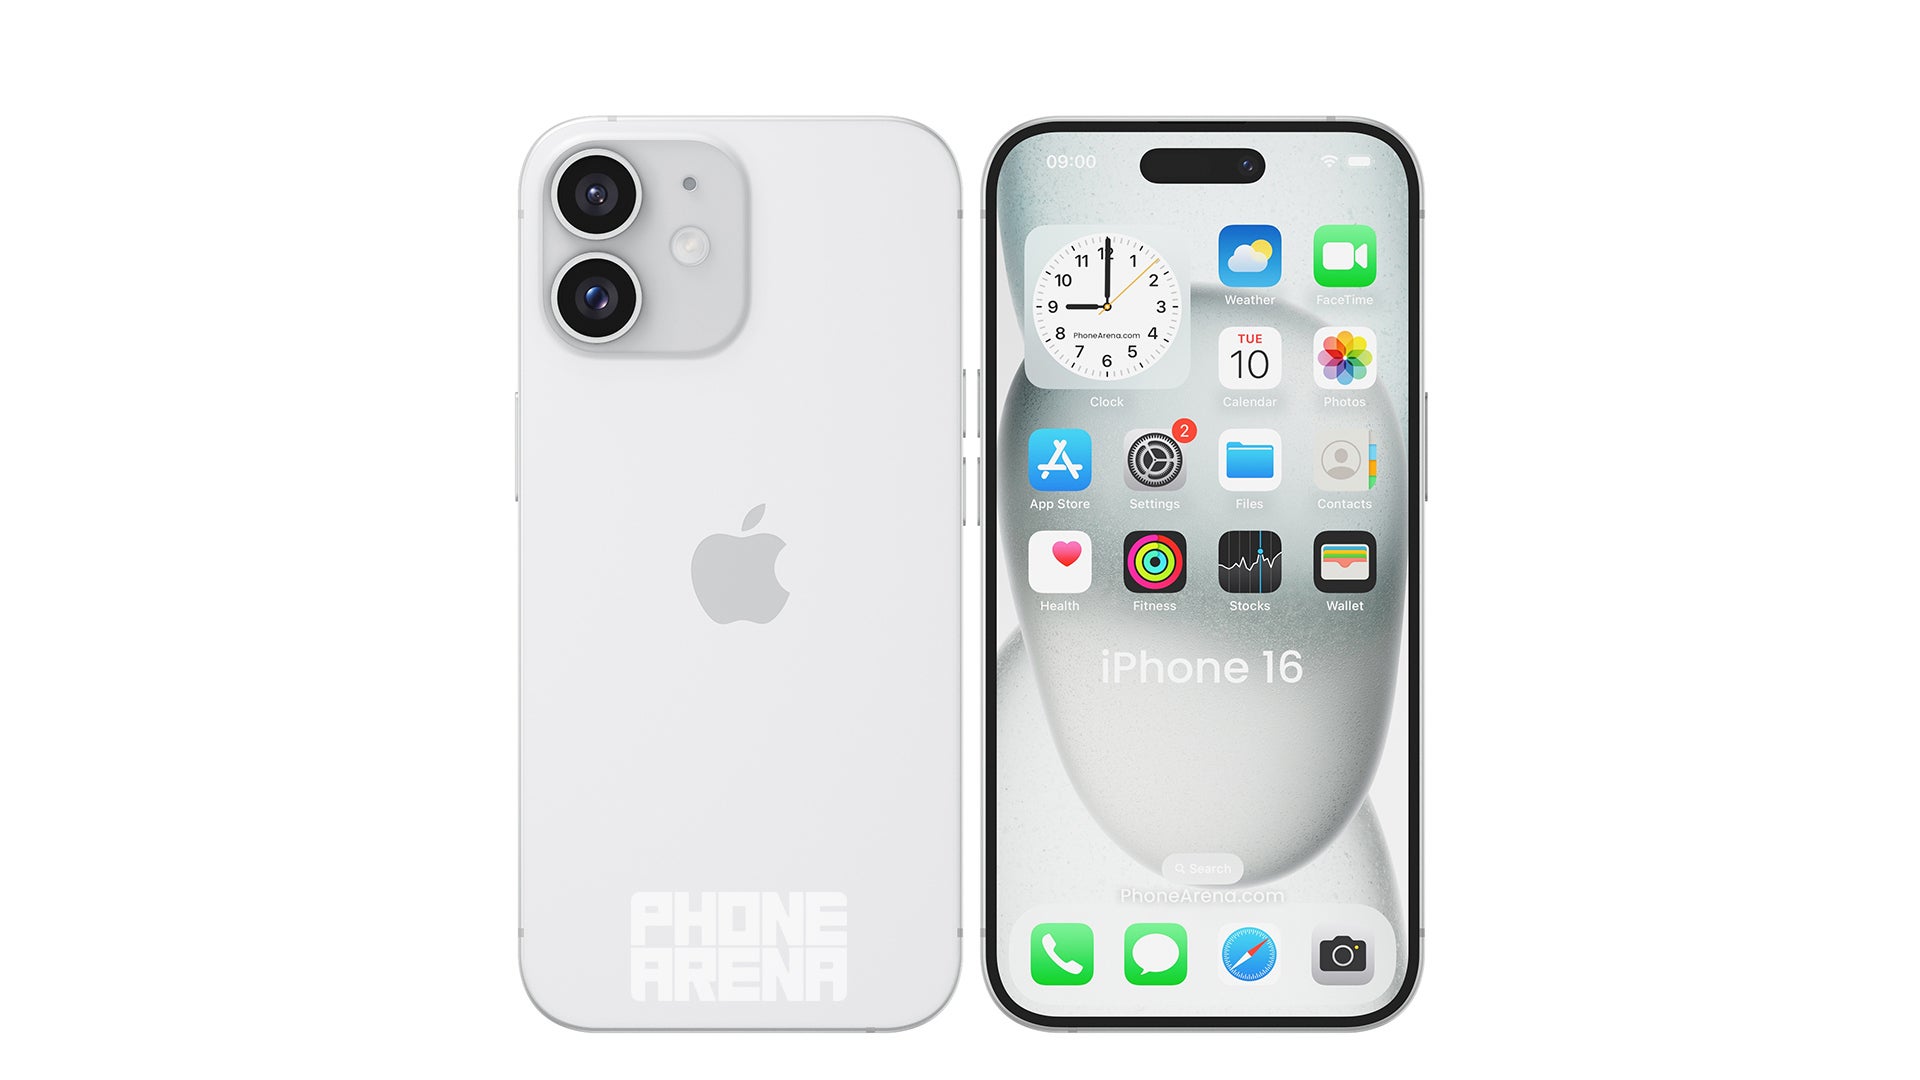 Resim kredisi – PhoneArena - Hadi $$$ hakkında konuşalım: iPhone 16 fiyatı artacak mı, azalacak mı… yoksa yatay mı seyredecek?